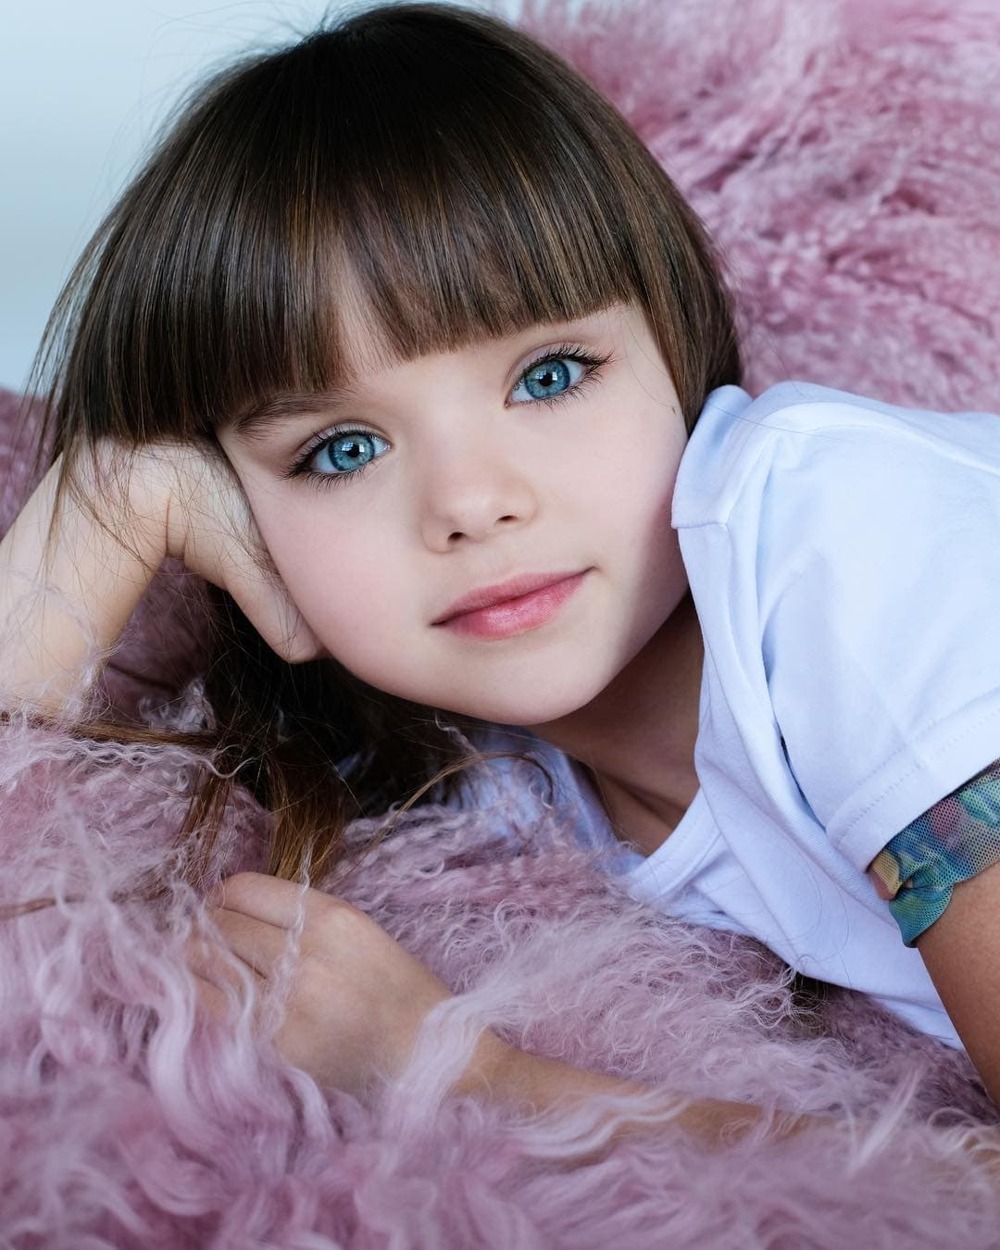 В далёком 2017 году Daily Mail назвал Настю Князеву самым красивым в мире ребёнком